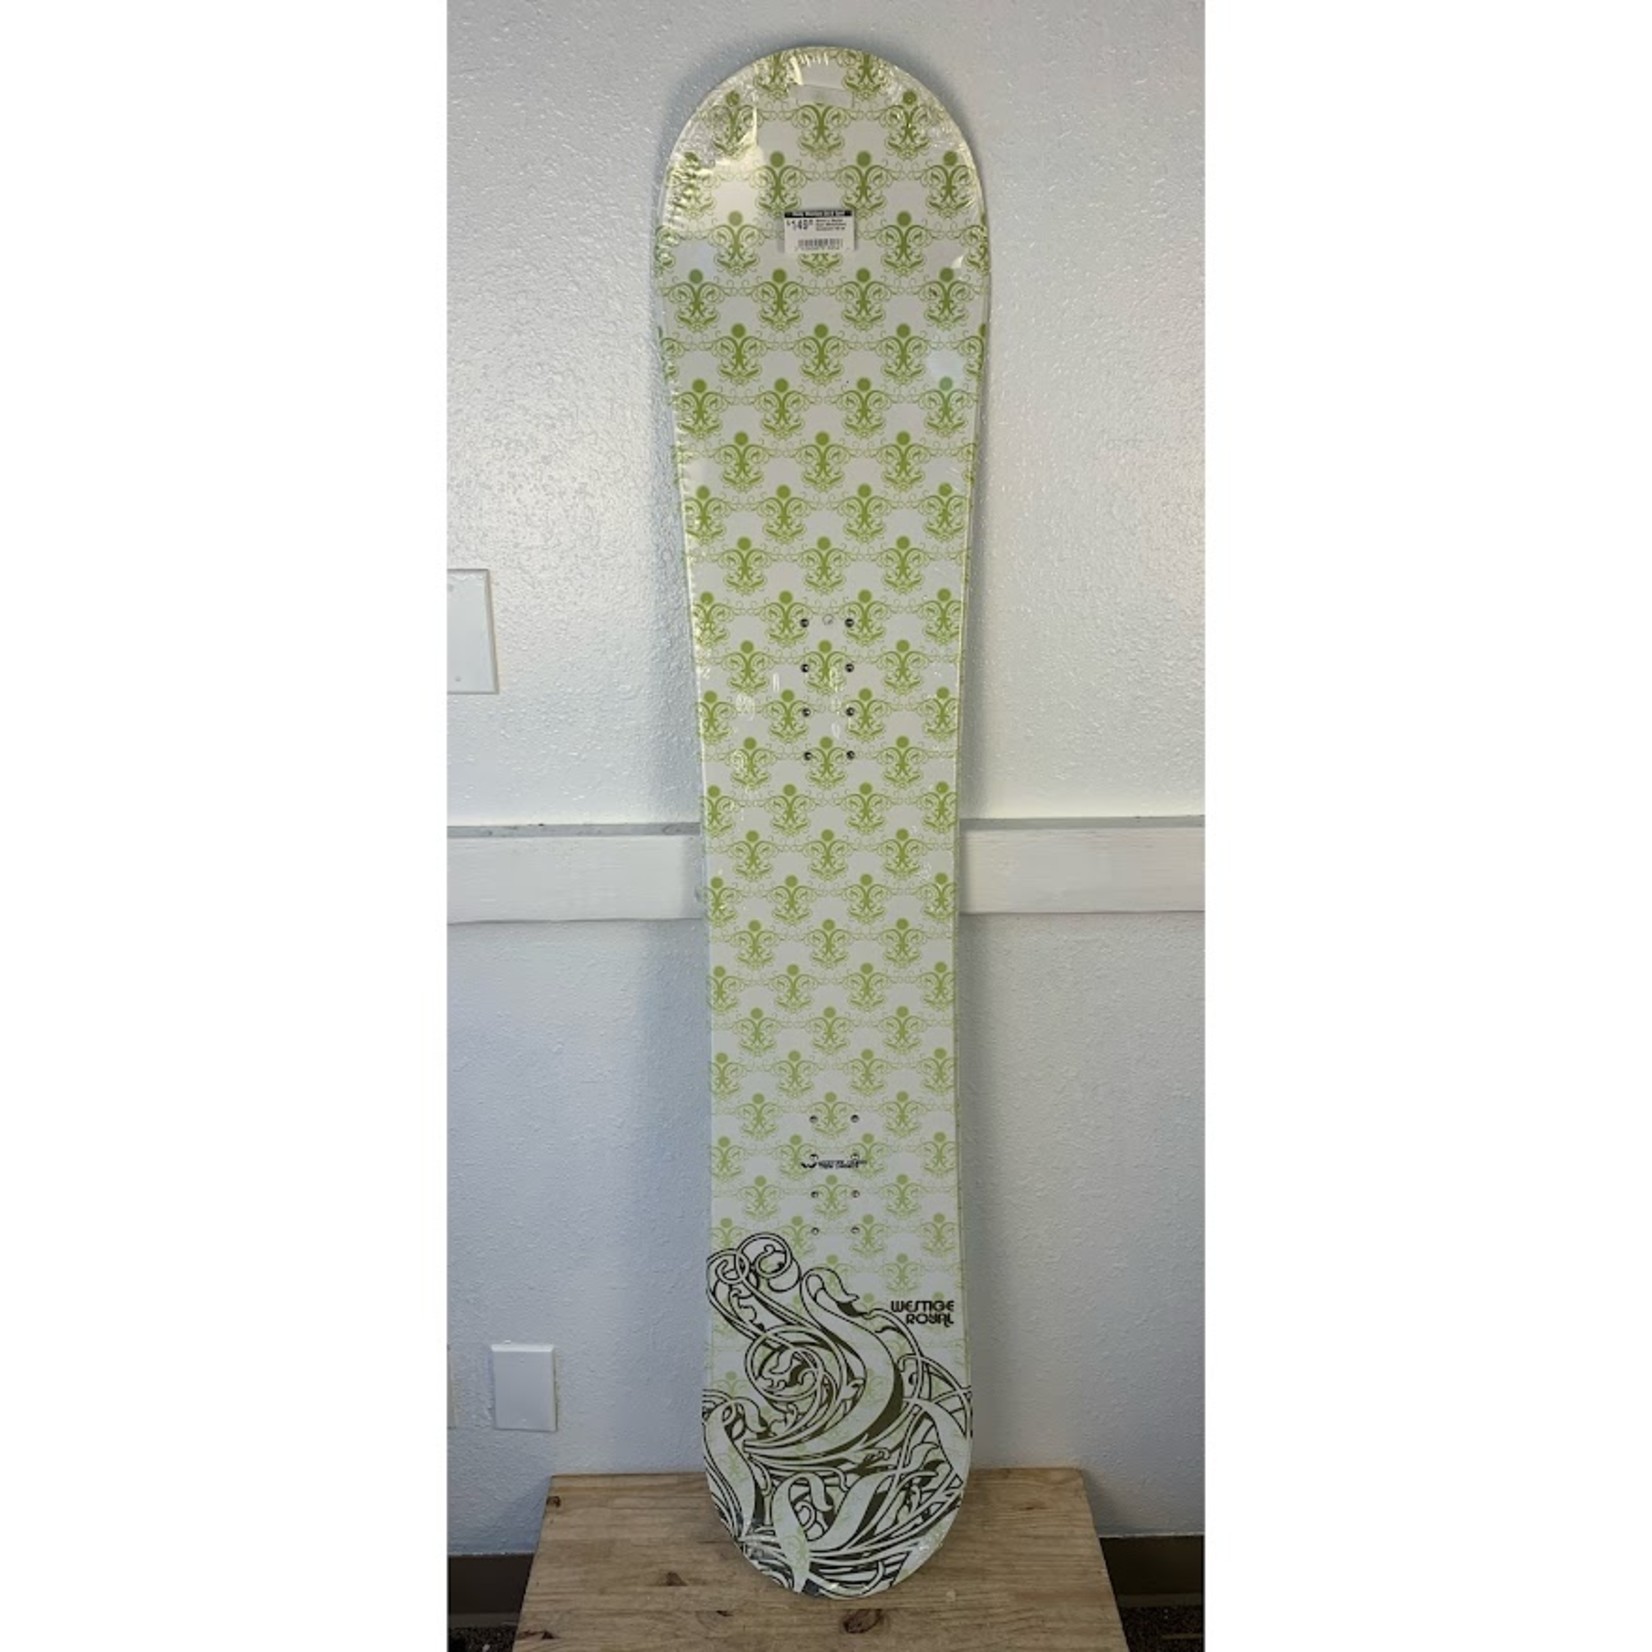 Women's Westige Royal (White/Green) Snowboard 145 cm